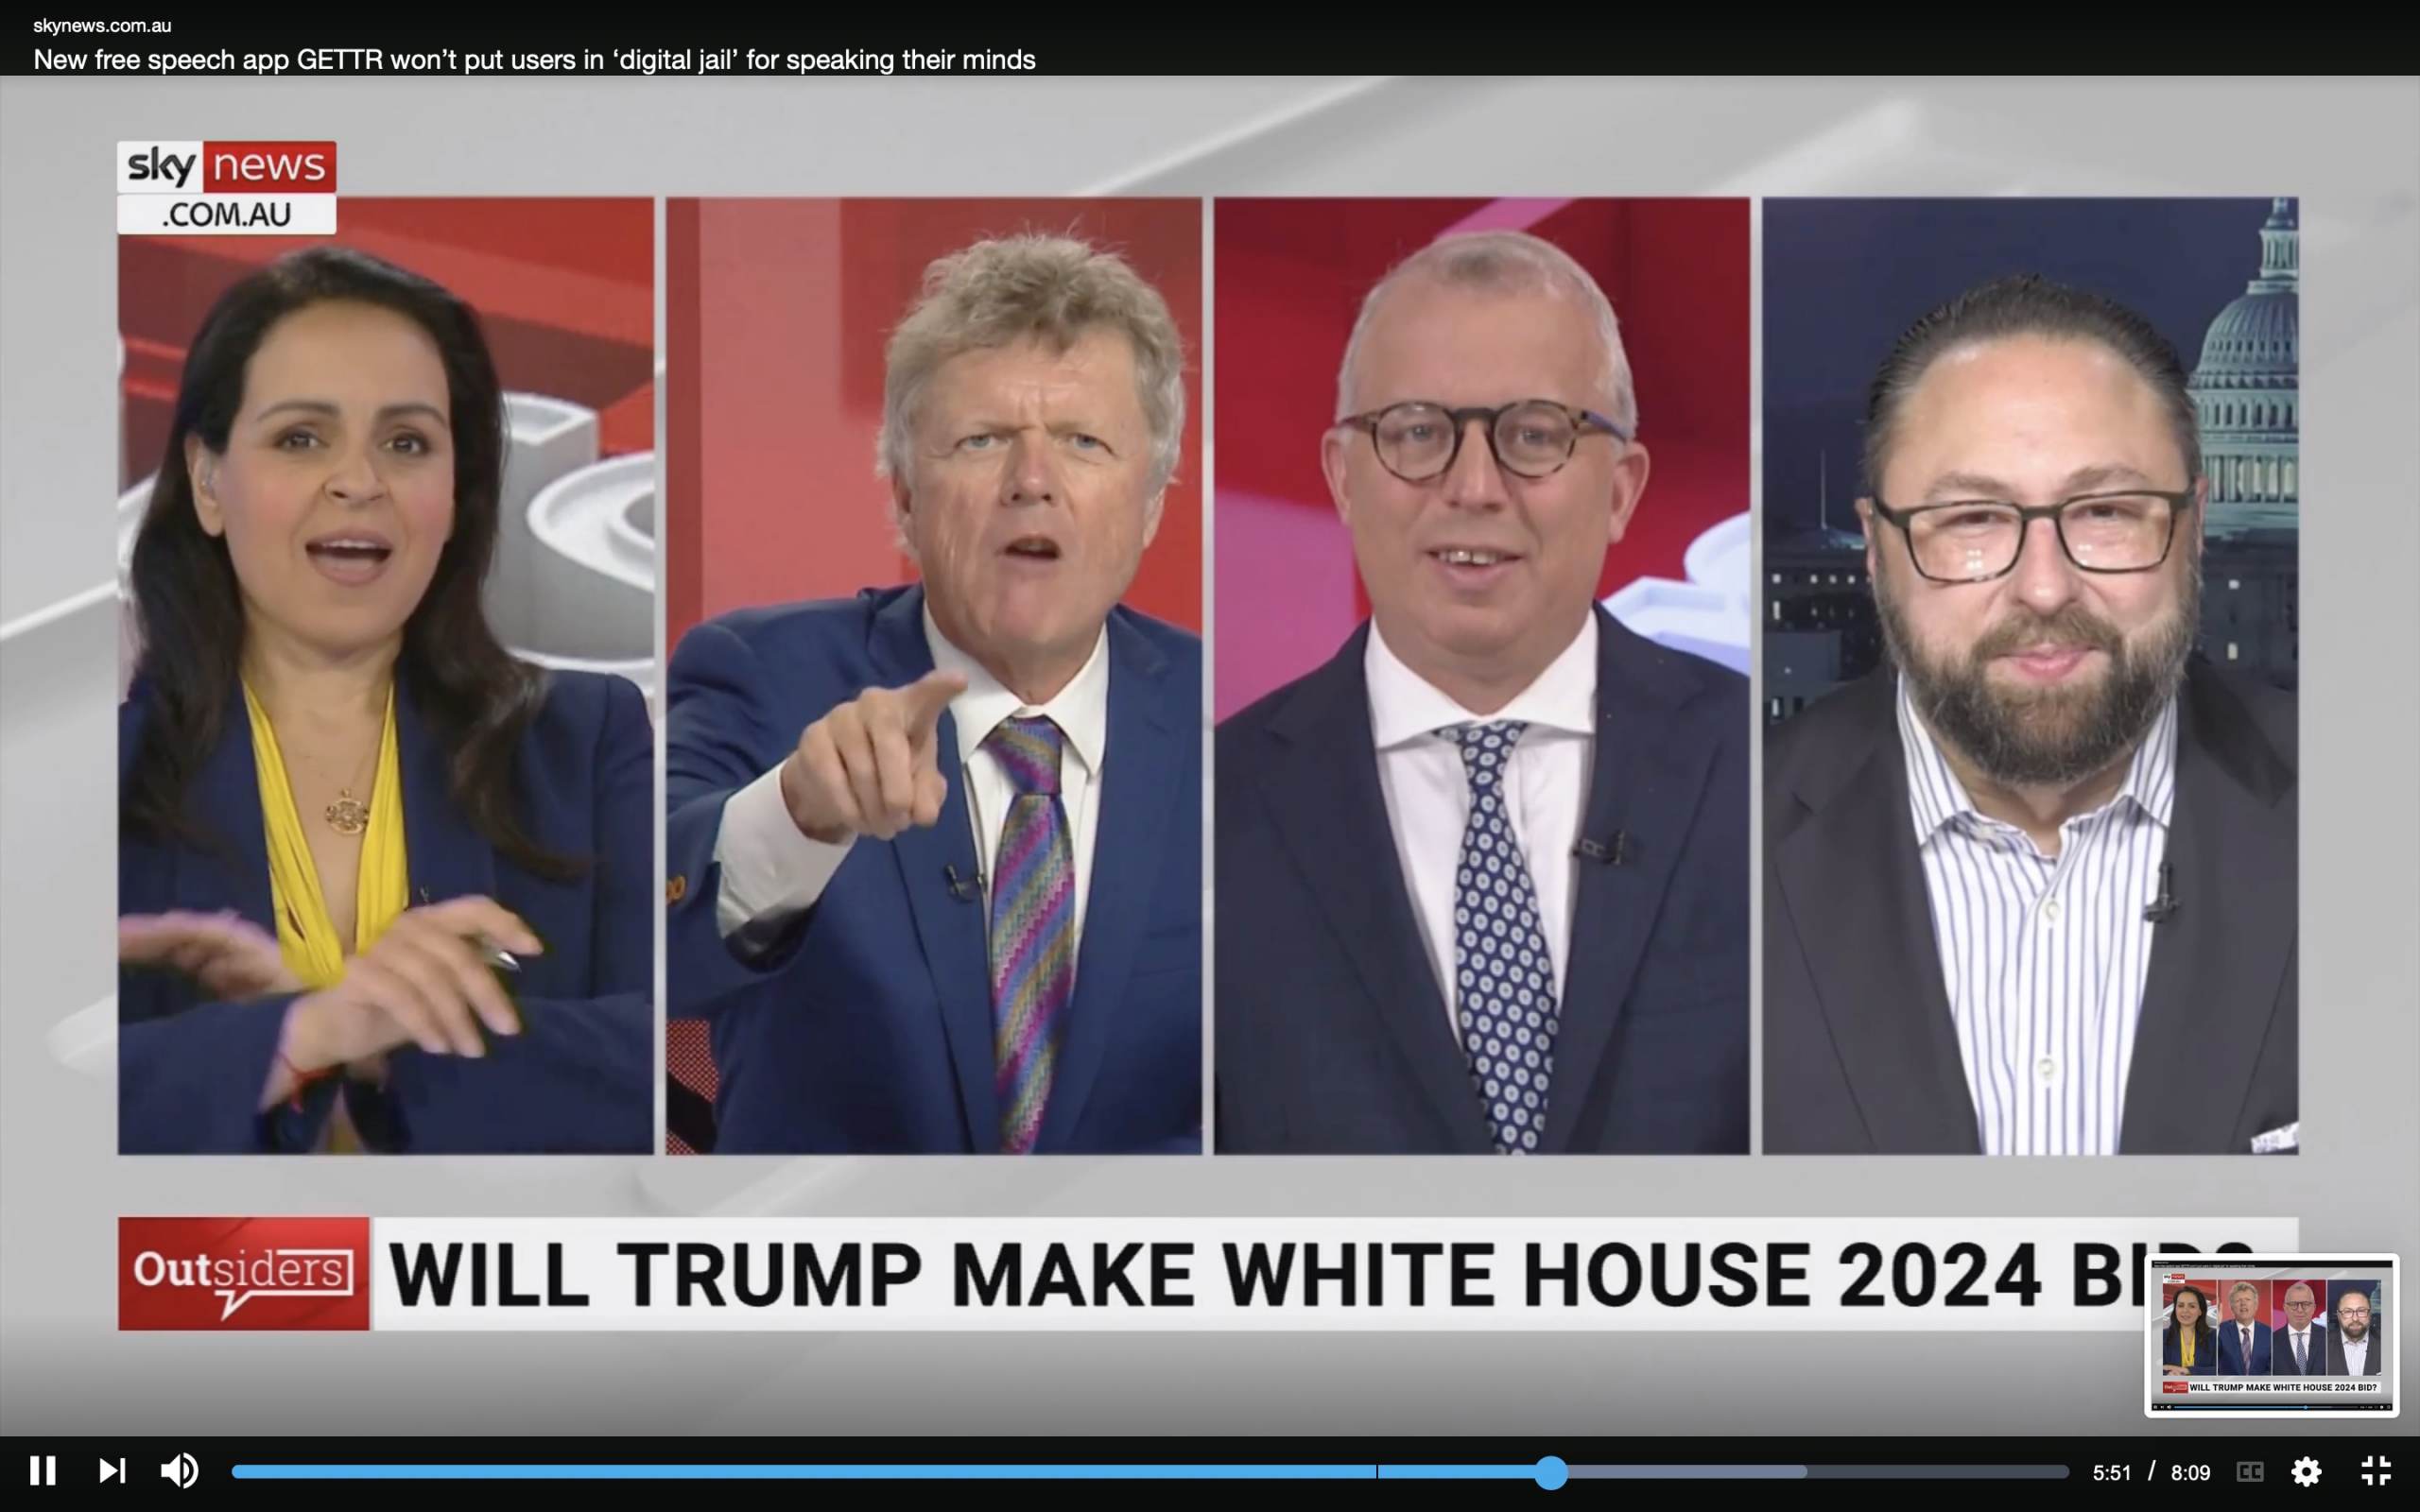 SKY News Host Rowan Dean “Trump 2024, de Santis 2028 and 2032. We’ve